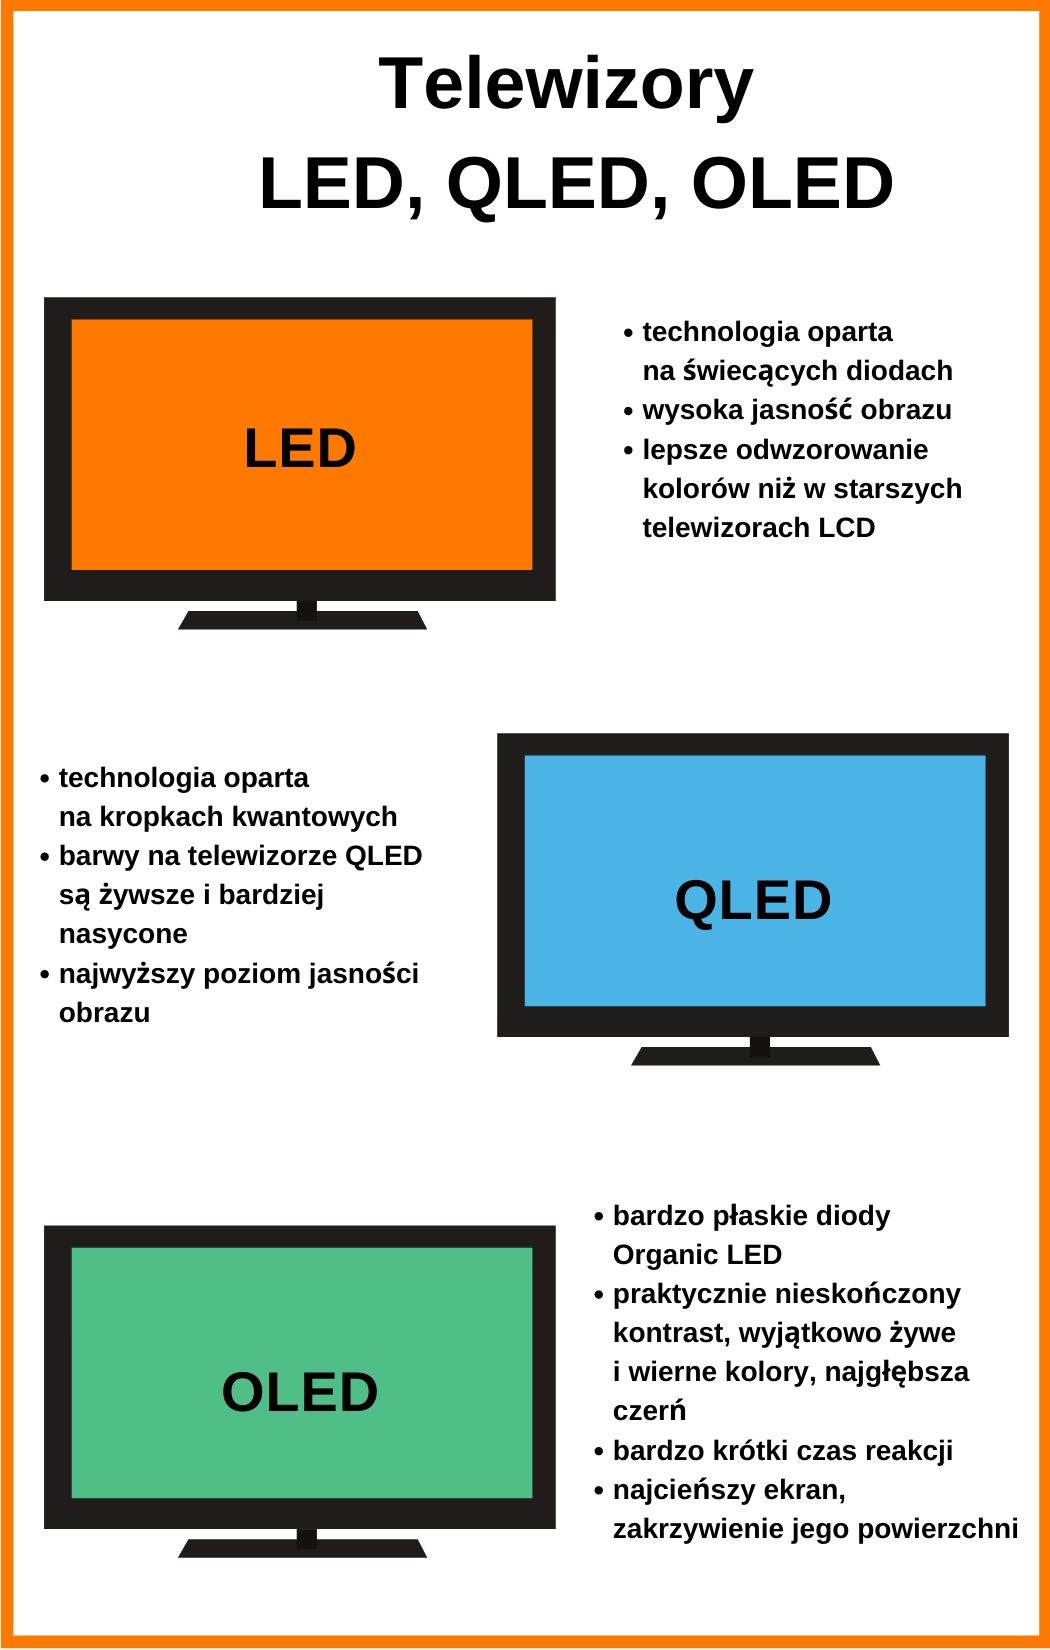 Czy QLED jest lepszy od LED?